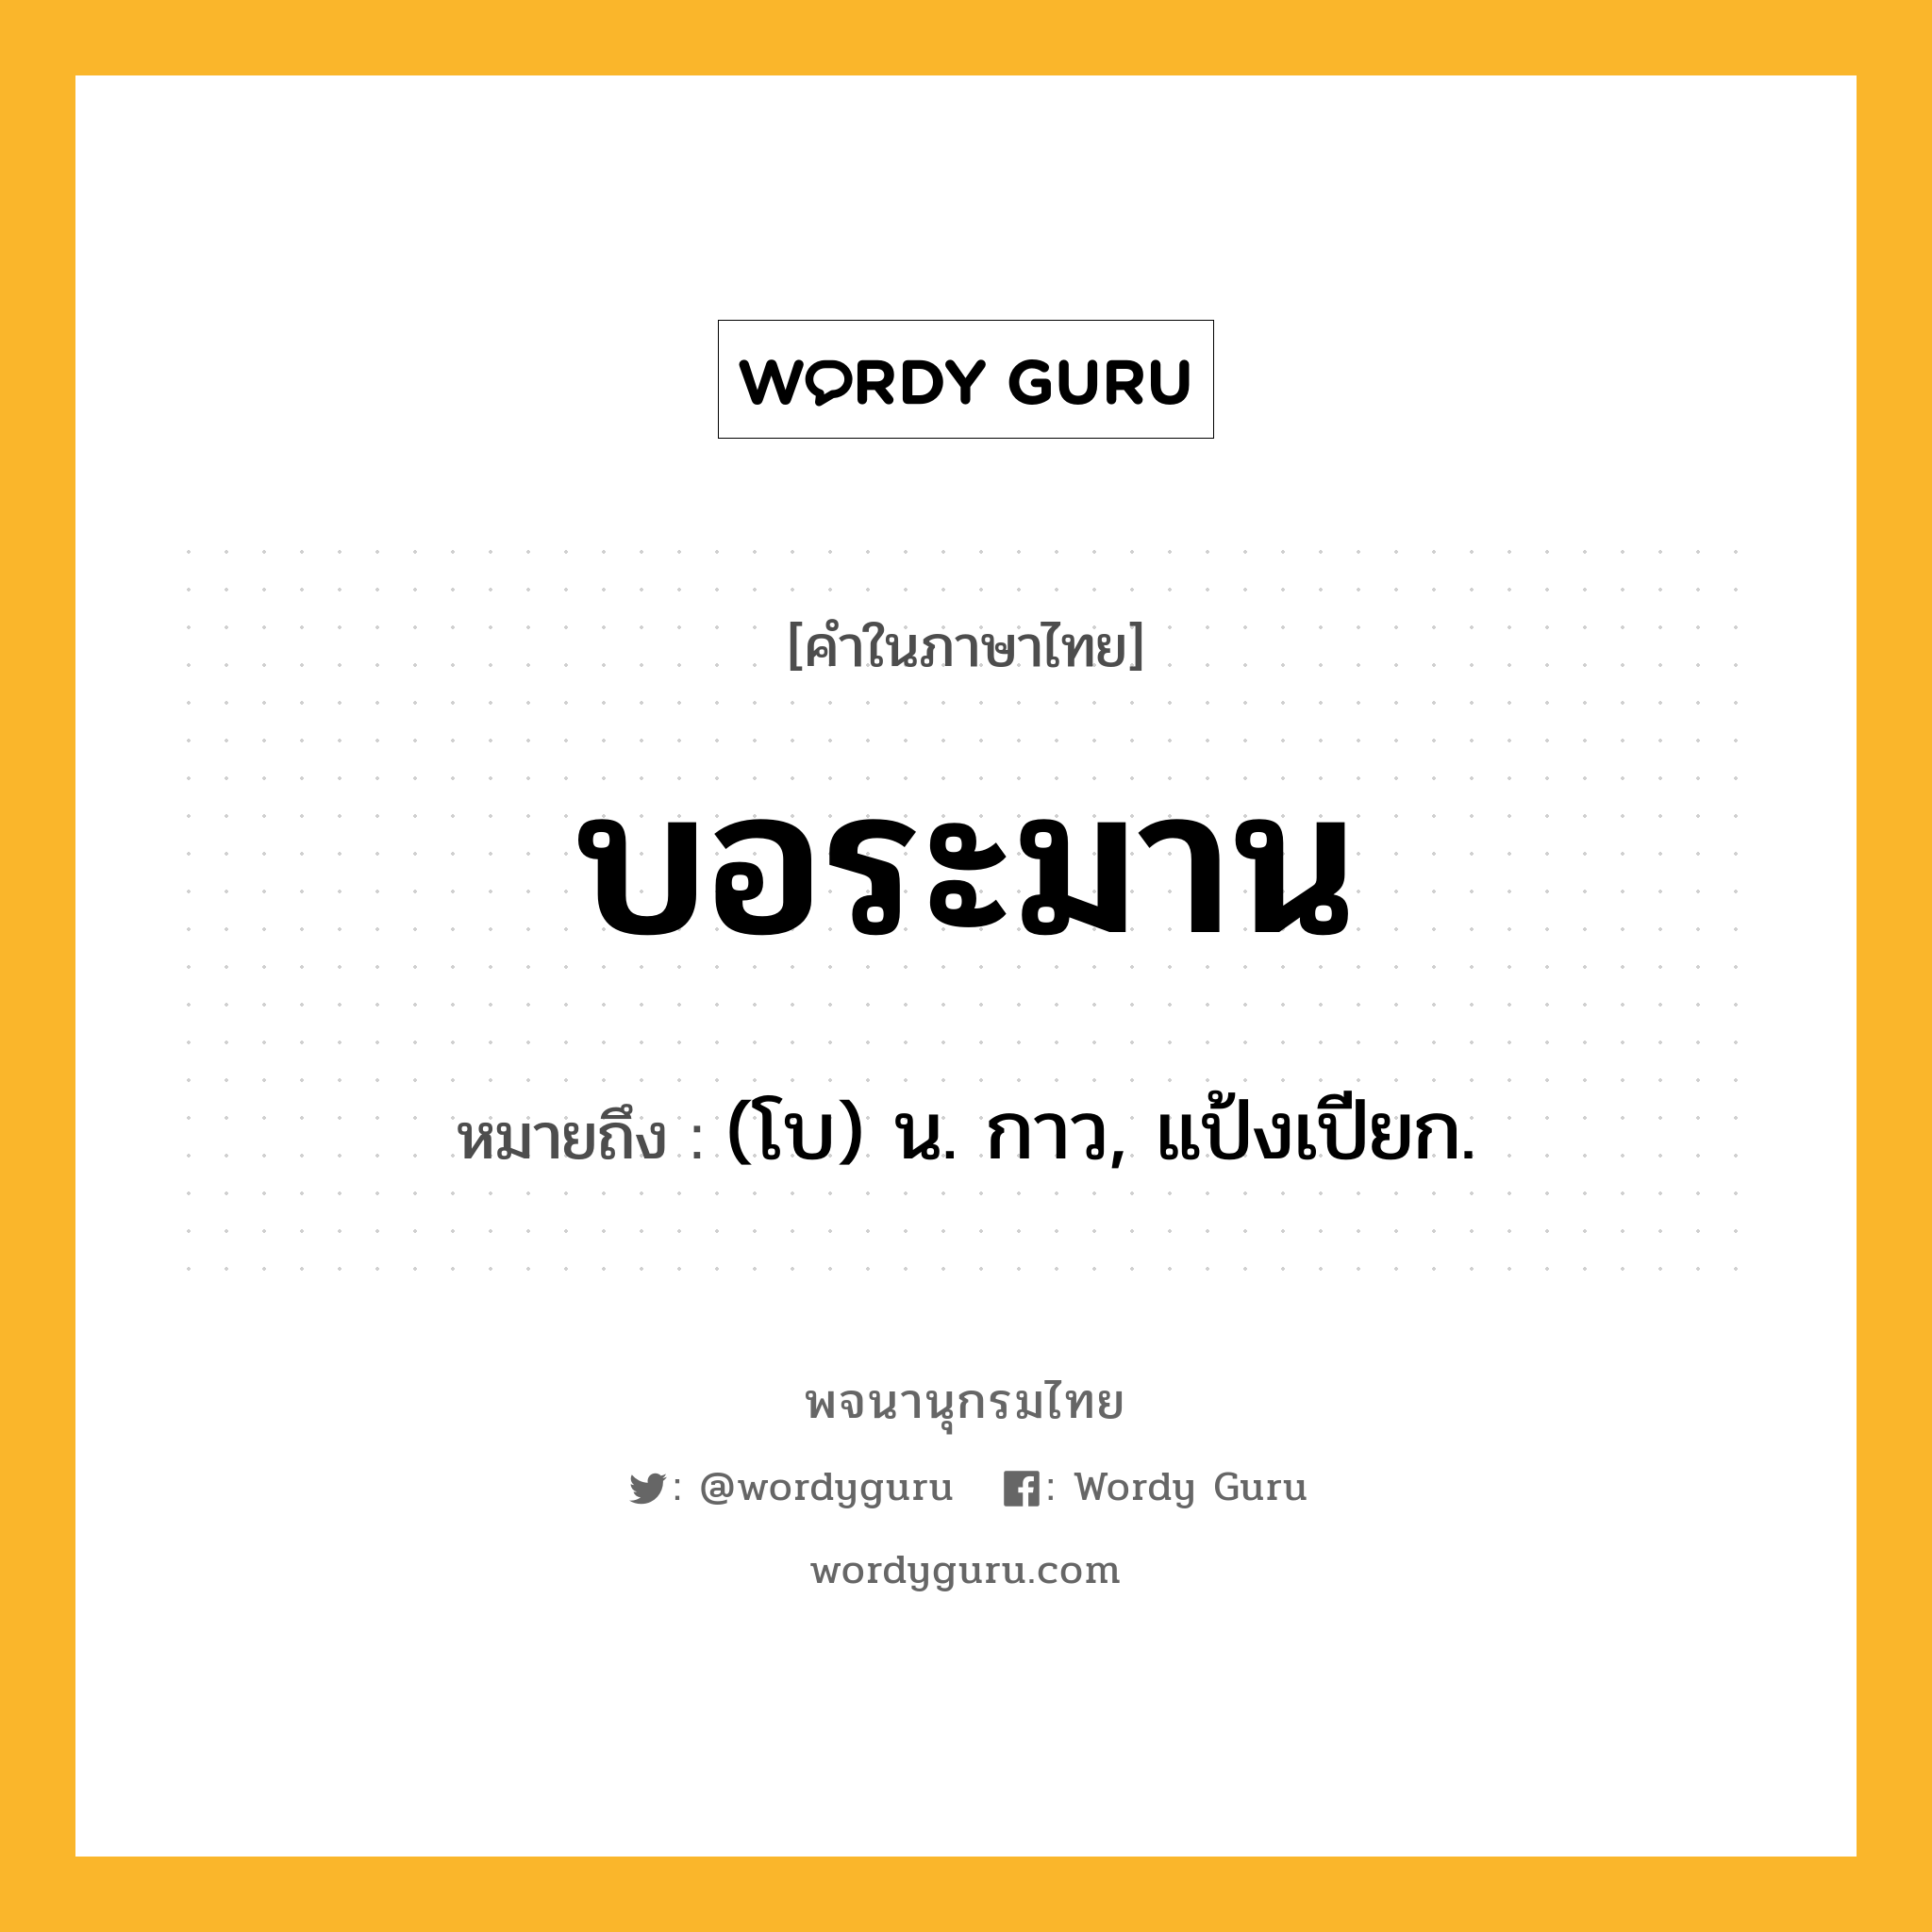 บอระมาน หมายถึงอะไร?, คำในภาษาไทย บอระมาน หมายถึง (โบ) น. กาว, แป้งเปียก.